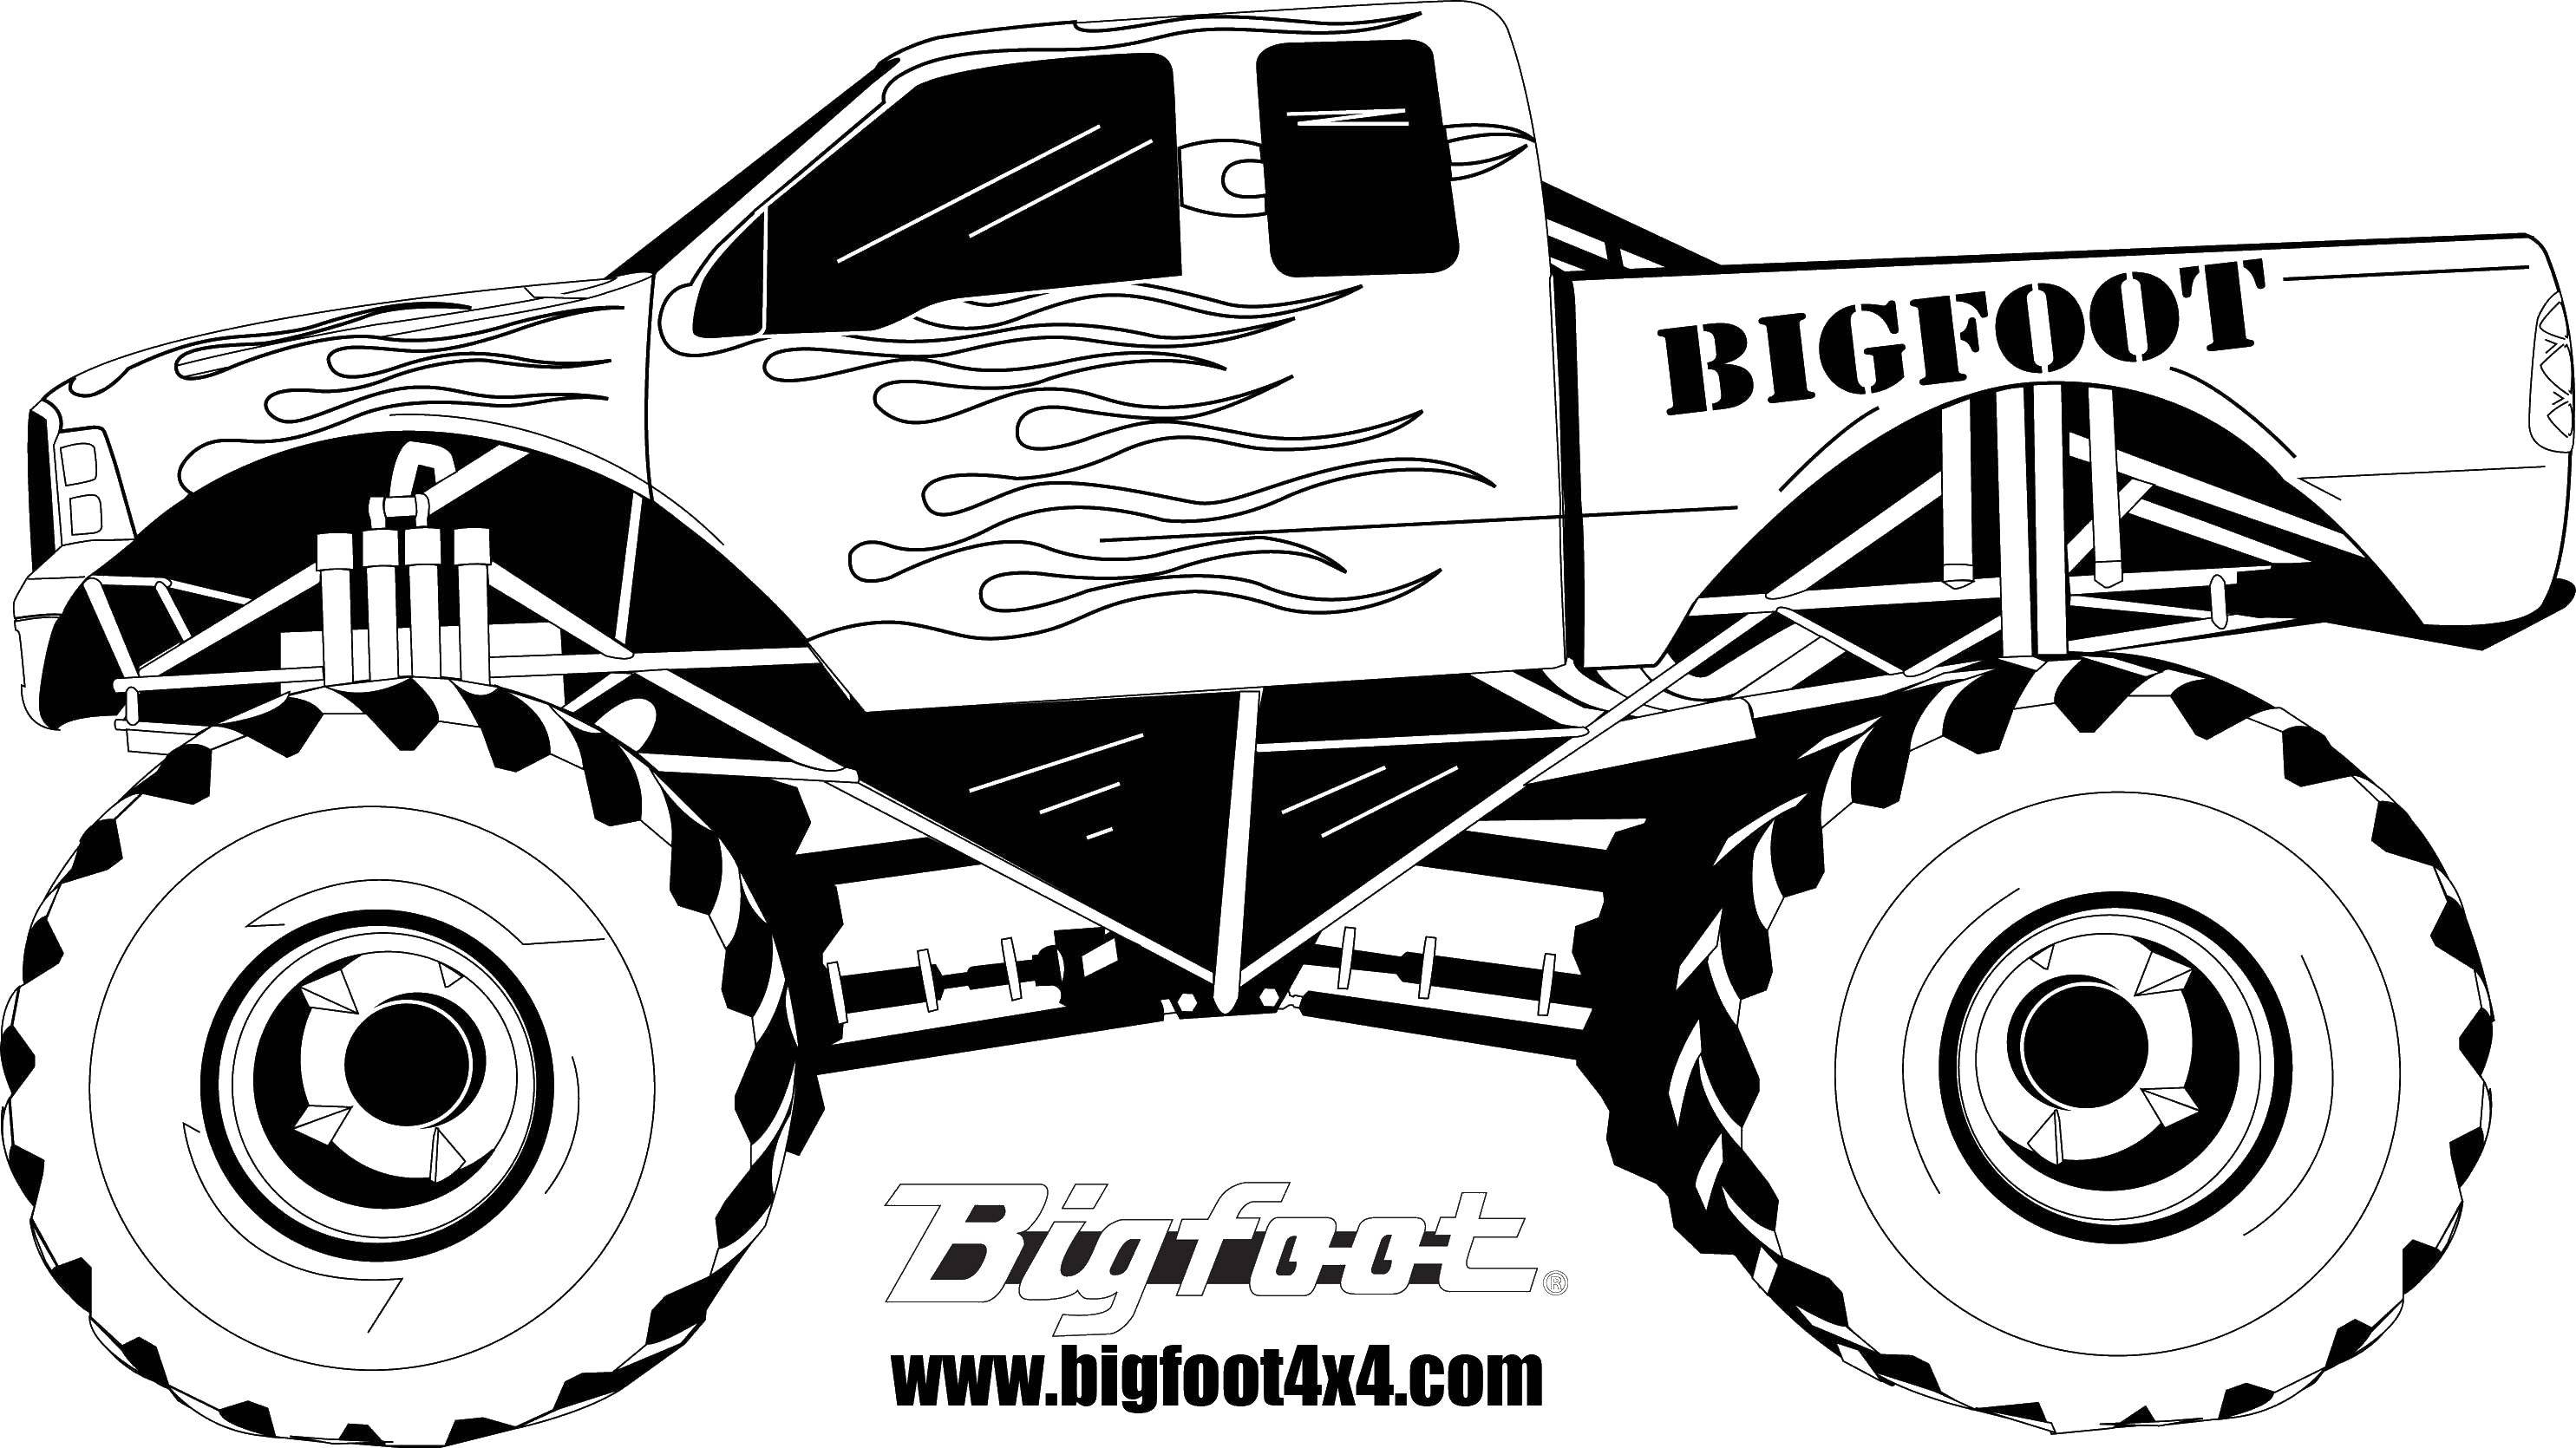 Название: Раскраска Bigfoot. Категория: Монстры. Теги: монстры, машины, джипы.